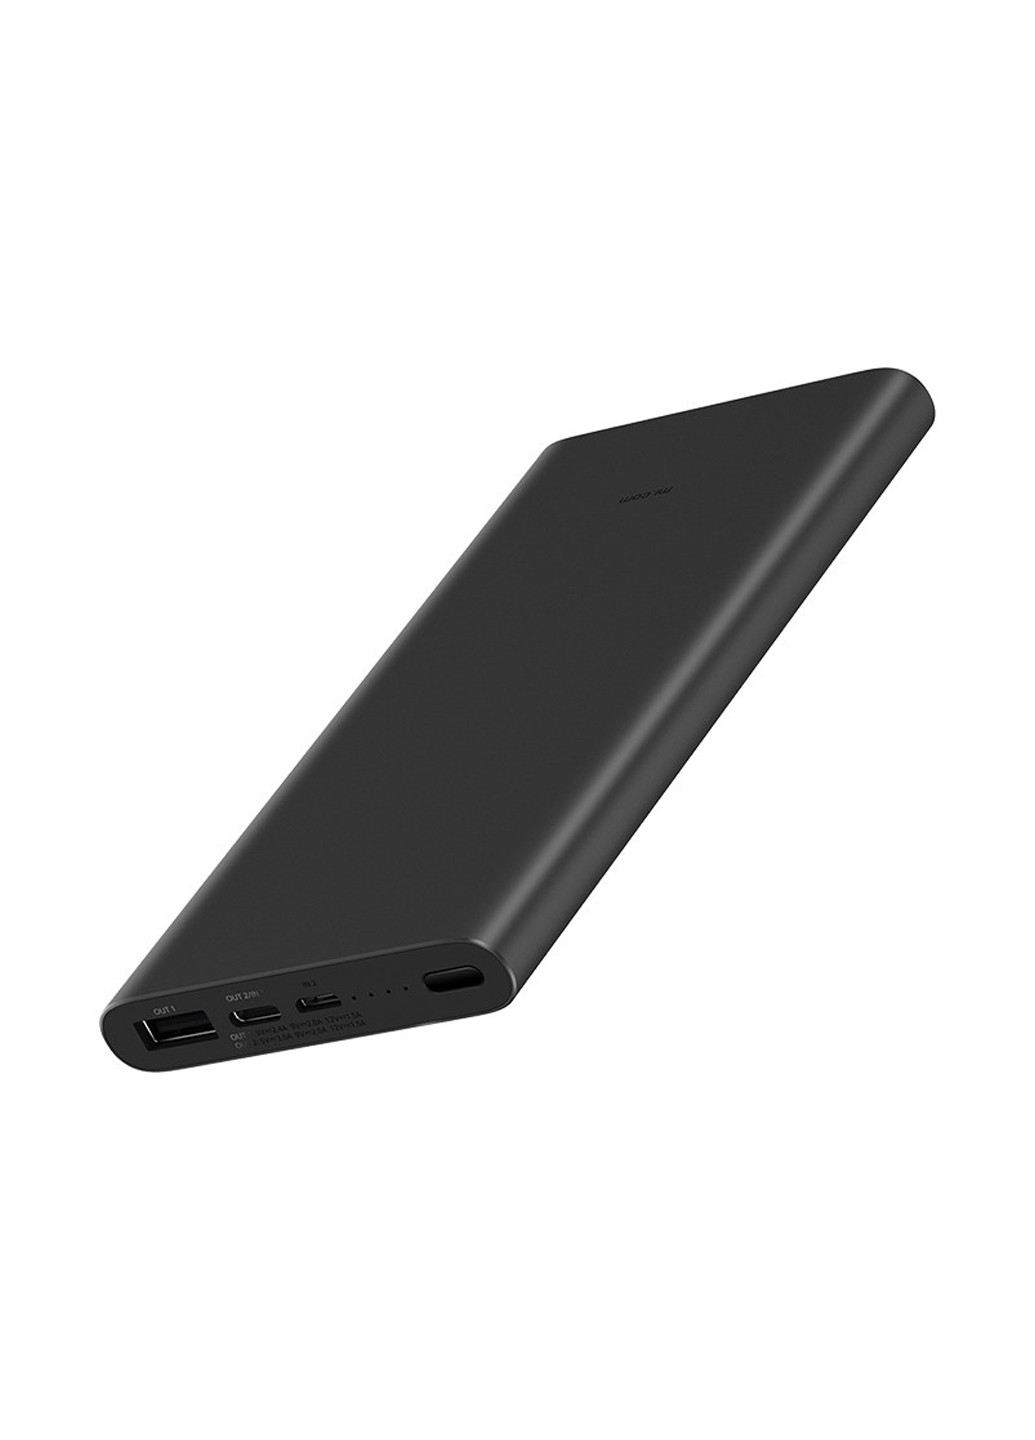 Универсальная батарея (павербанк) Xiaomi Mi 3 10000mAh (черный)